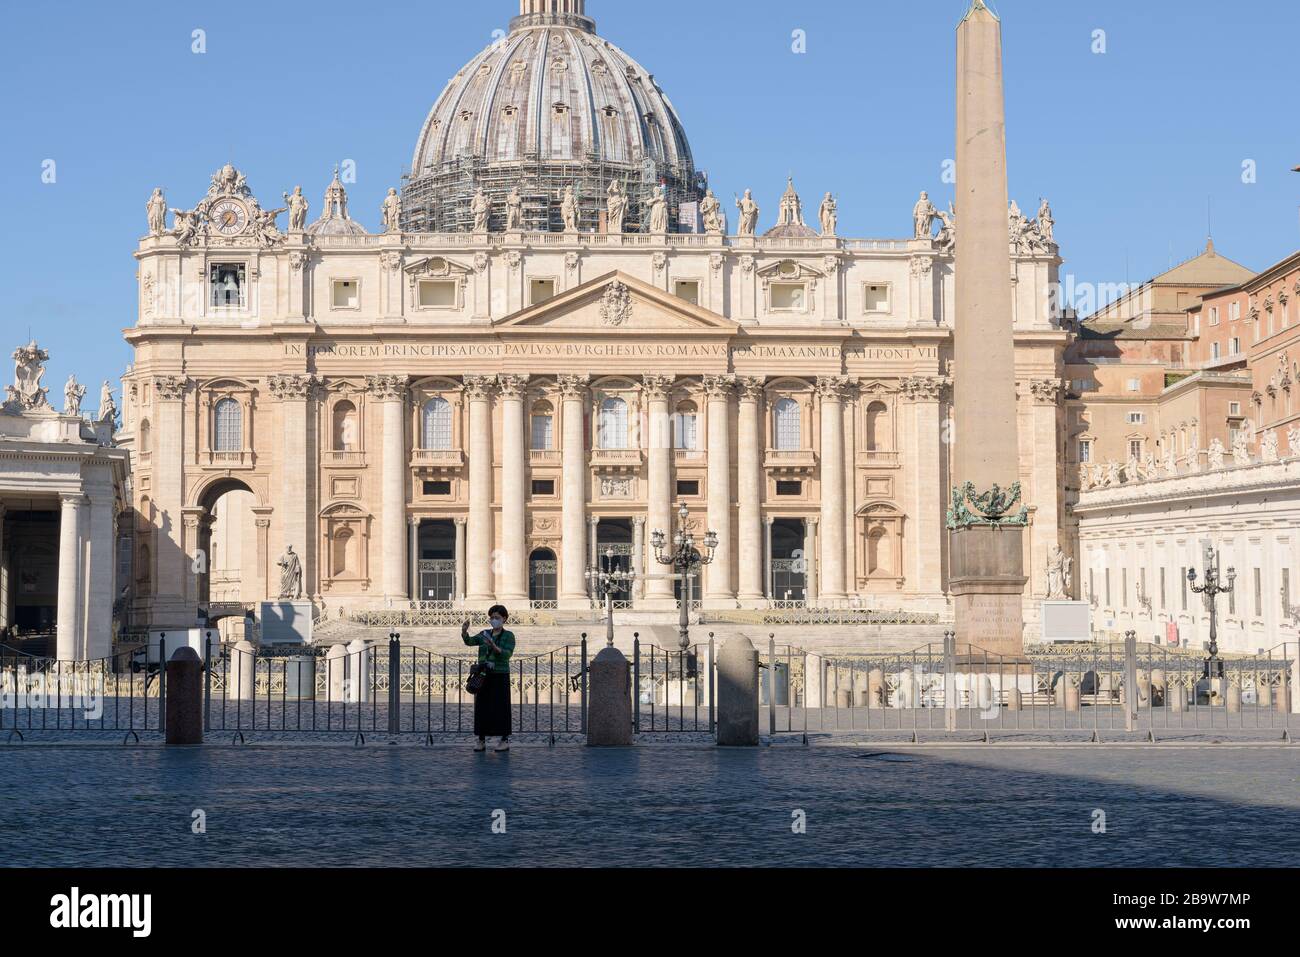 ROME, ITALIE - 12 mars 2020: Un touriste prend un selfie devant la place Saint Pierre vide, Vatican, Italie. Suite à la pandémie de coronavirus, Italie Banque D'Images